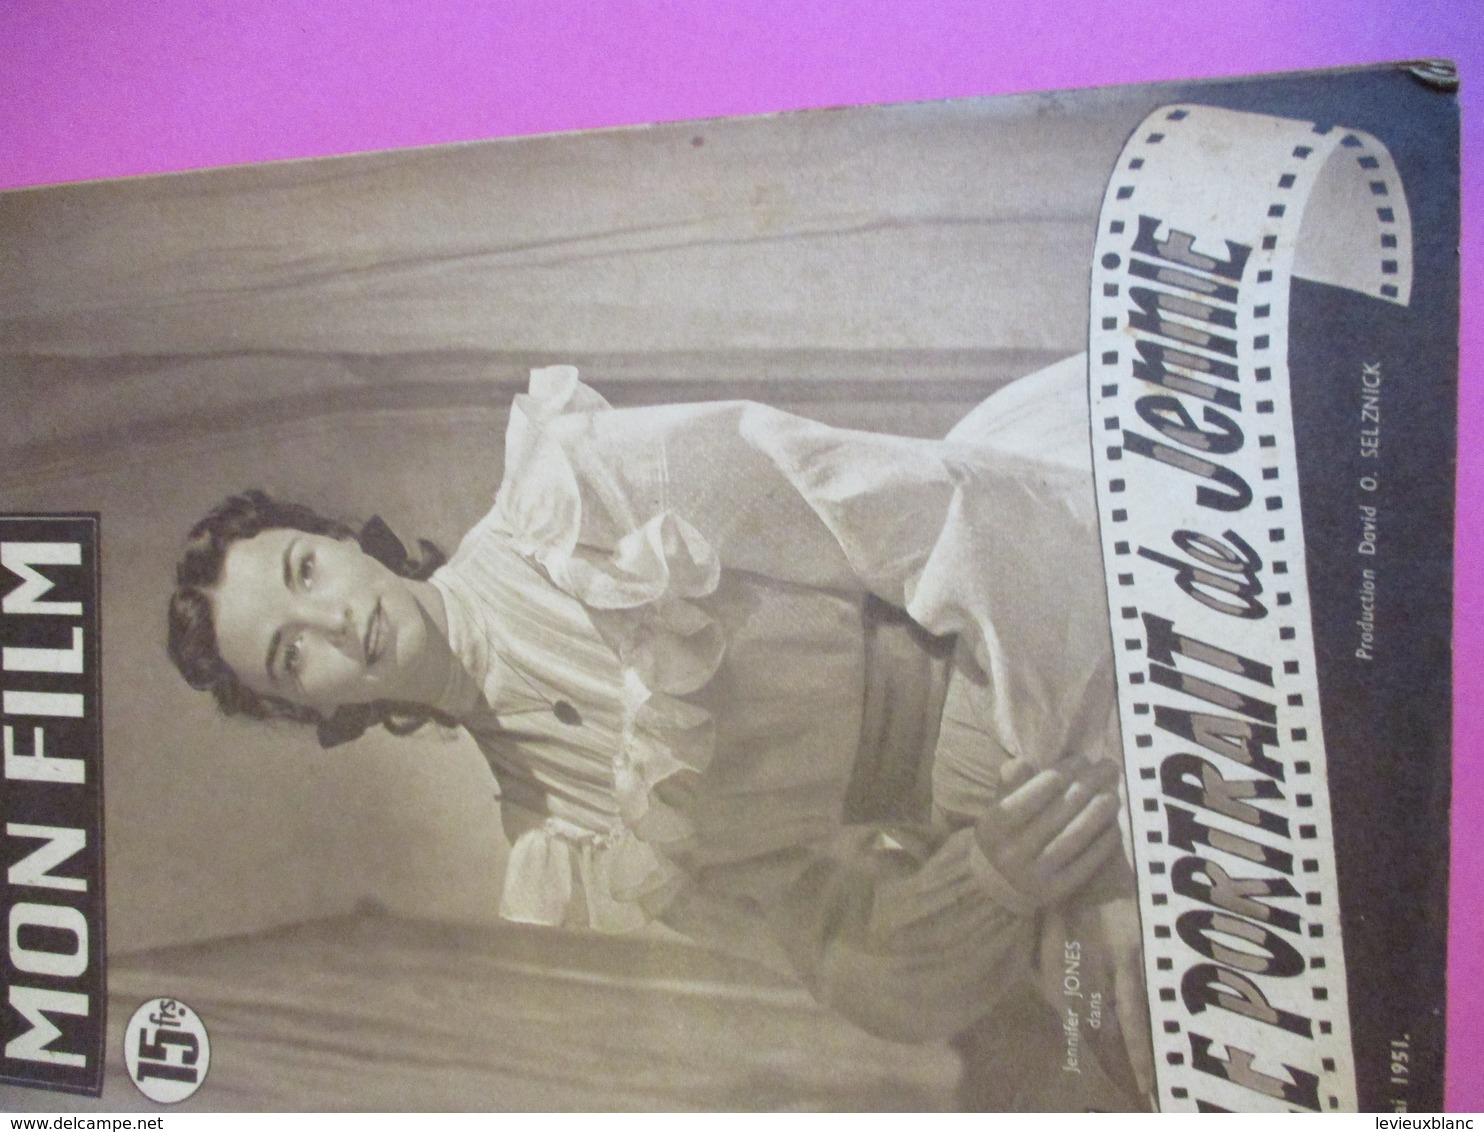 Cinéma/Revue/Mon Film/"Le Portrait De Jennie "/Jennifer JONES, Joseph COTTEN/Prod Selznick/William DIETERLE/1951  CIN101 - Altri & Non Classificati